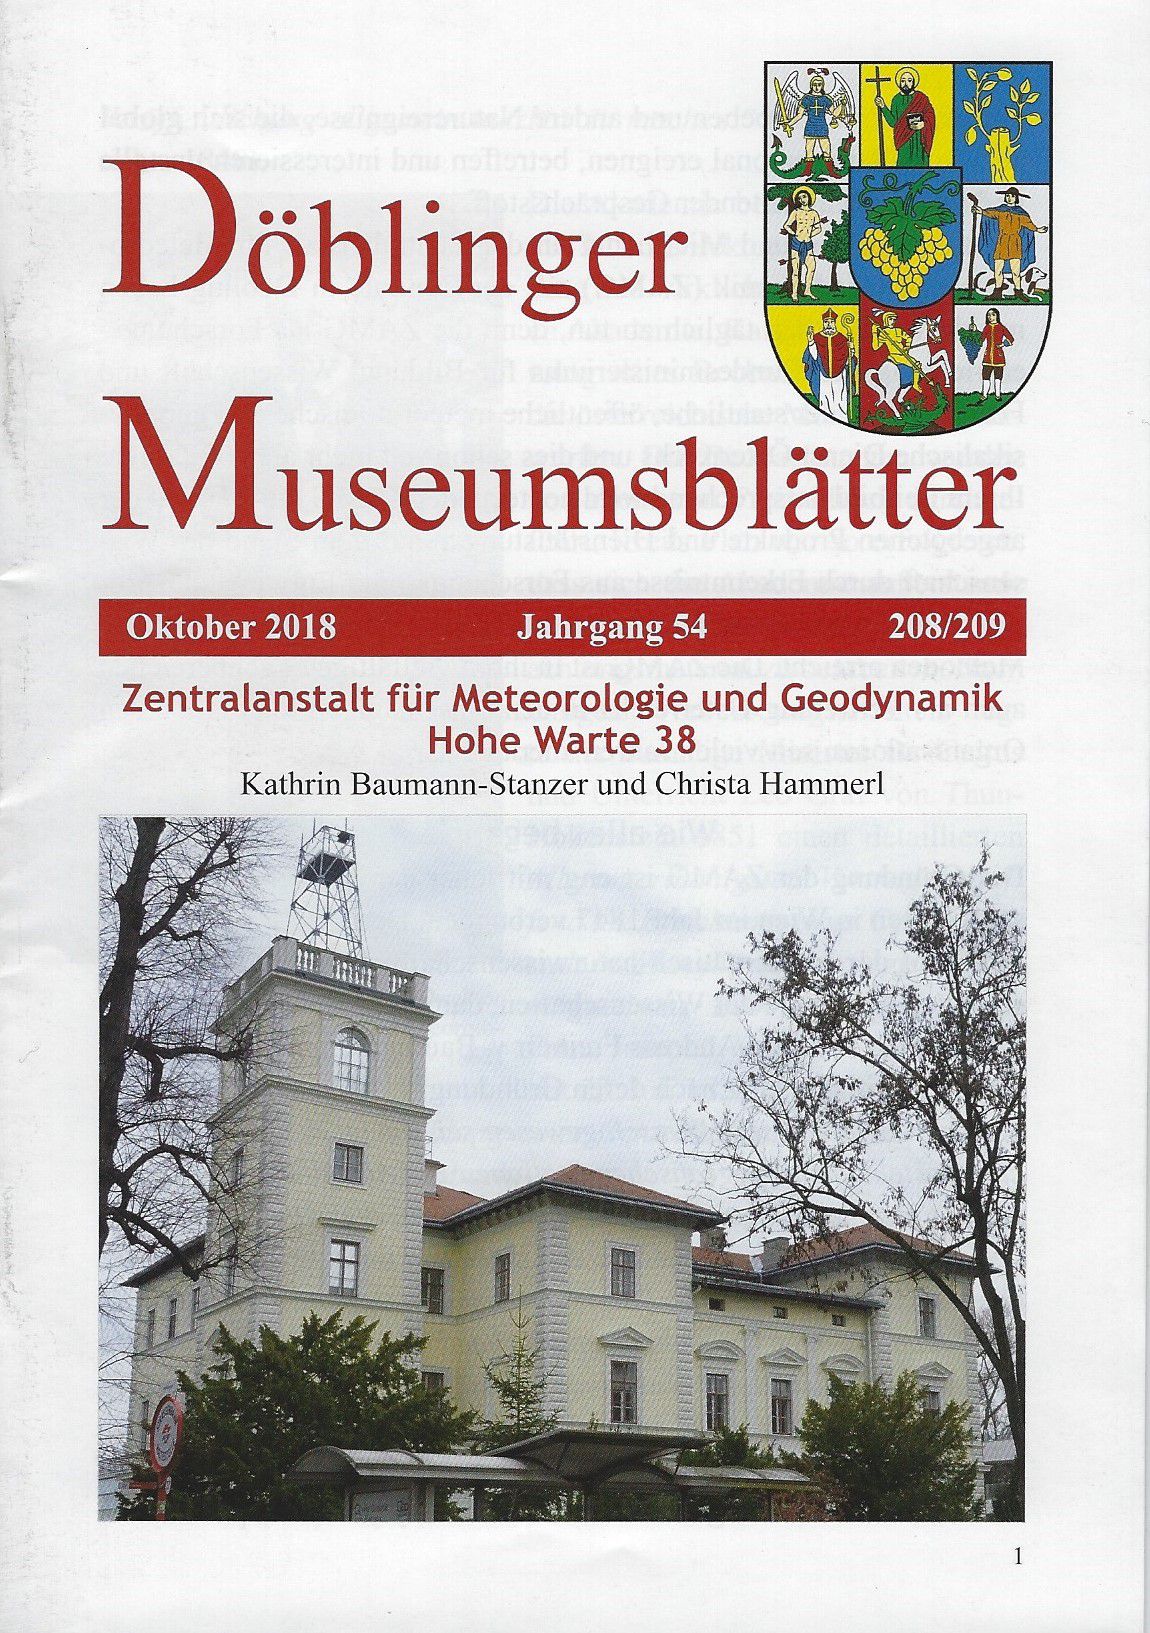 Publikation: Döblinger Museumsblätter, _Zentralanstalt für Meteorologie und Geodynamik